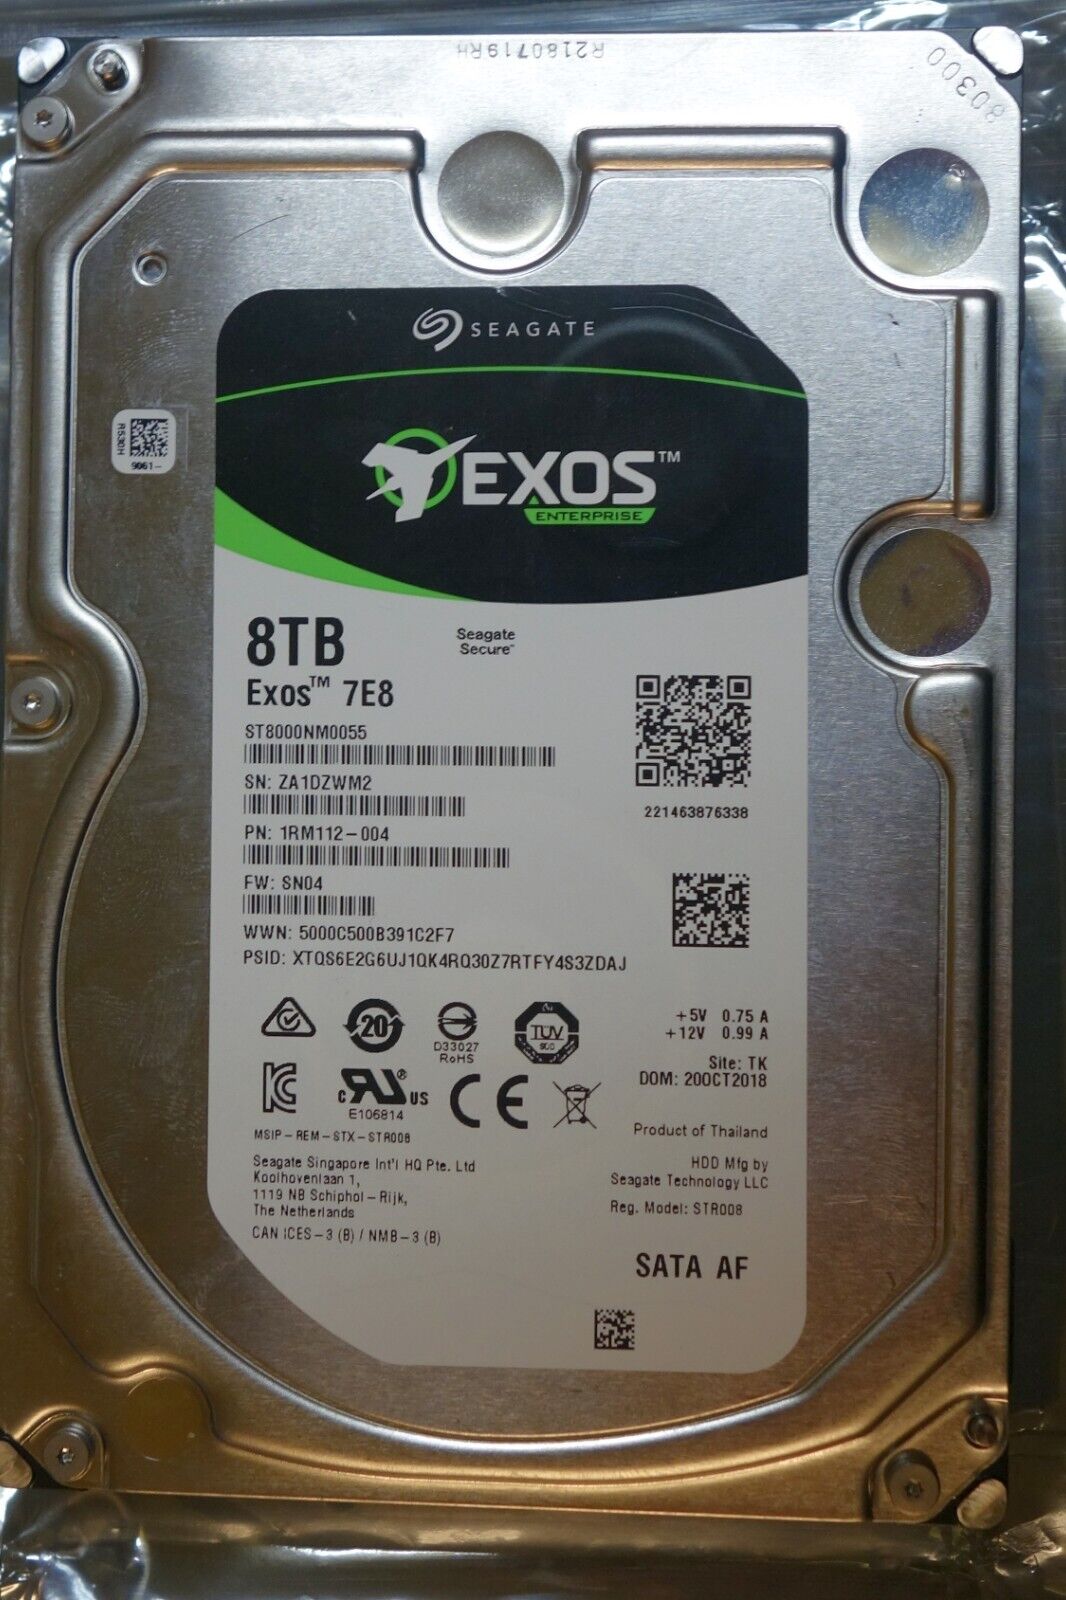 Seagate Exos 7e8 8TB Internal 7200 RPM 3.5 HDD (ST8000NM000A)⚠️16 BAD SECTORS ⚠